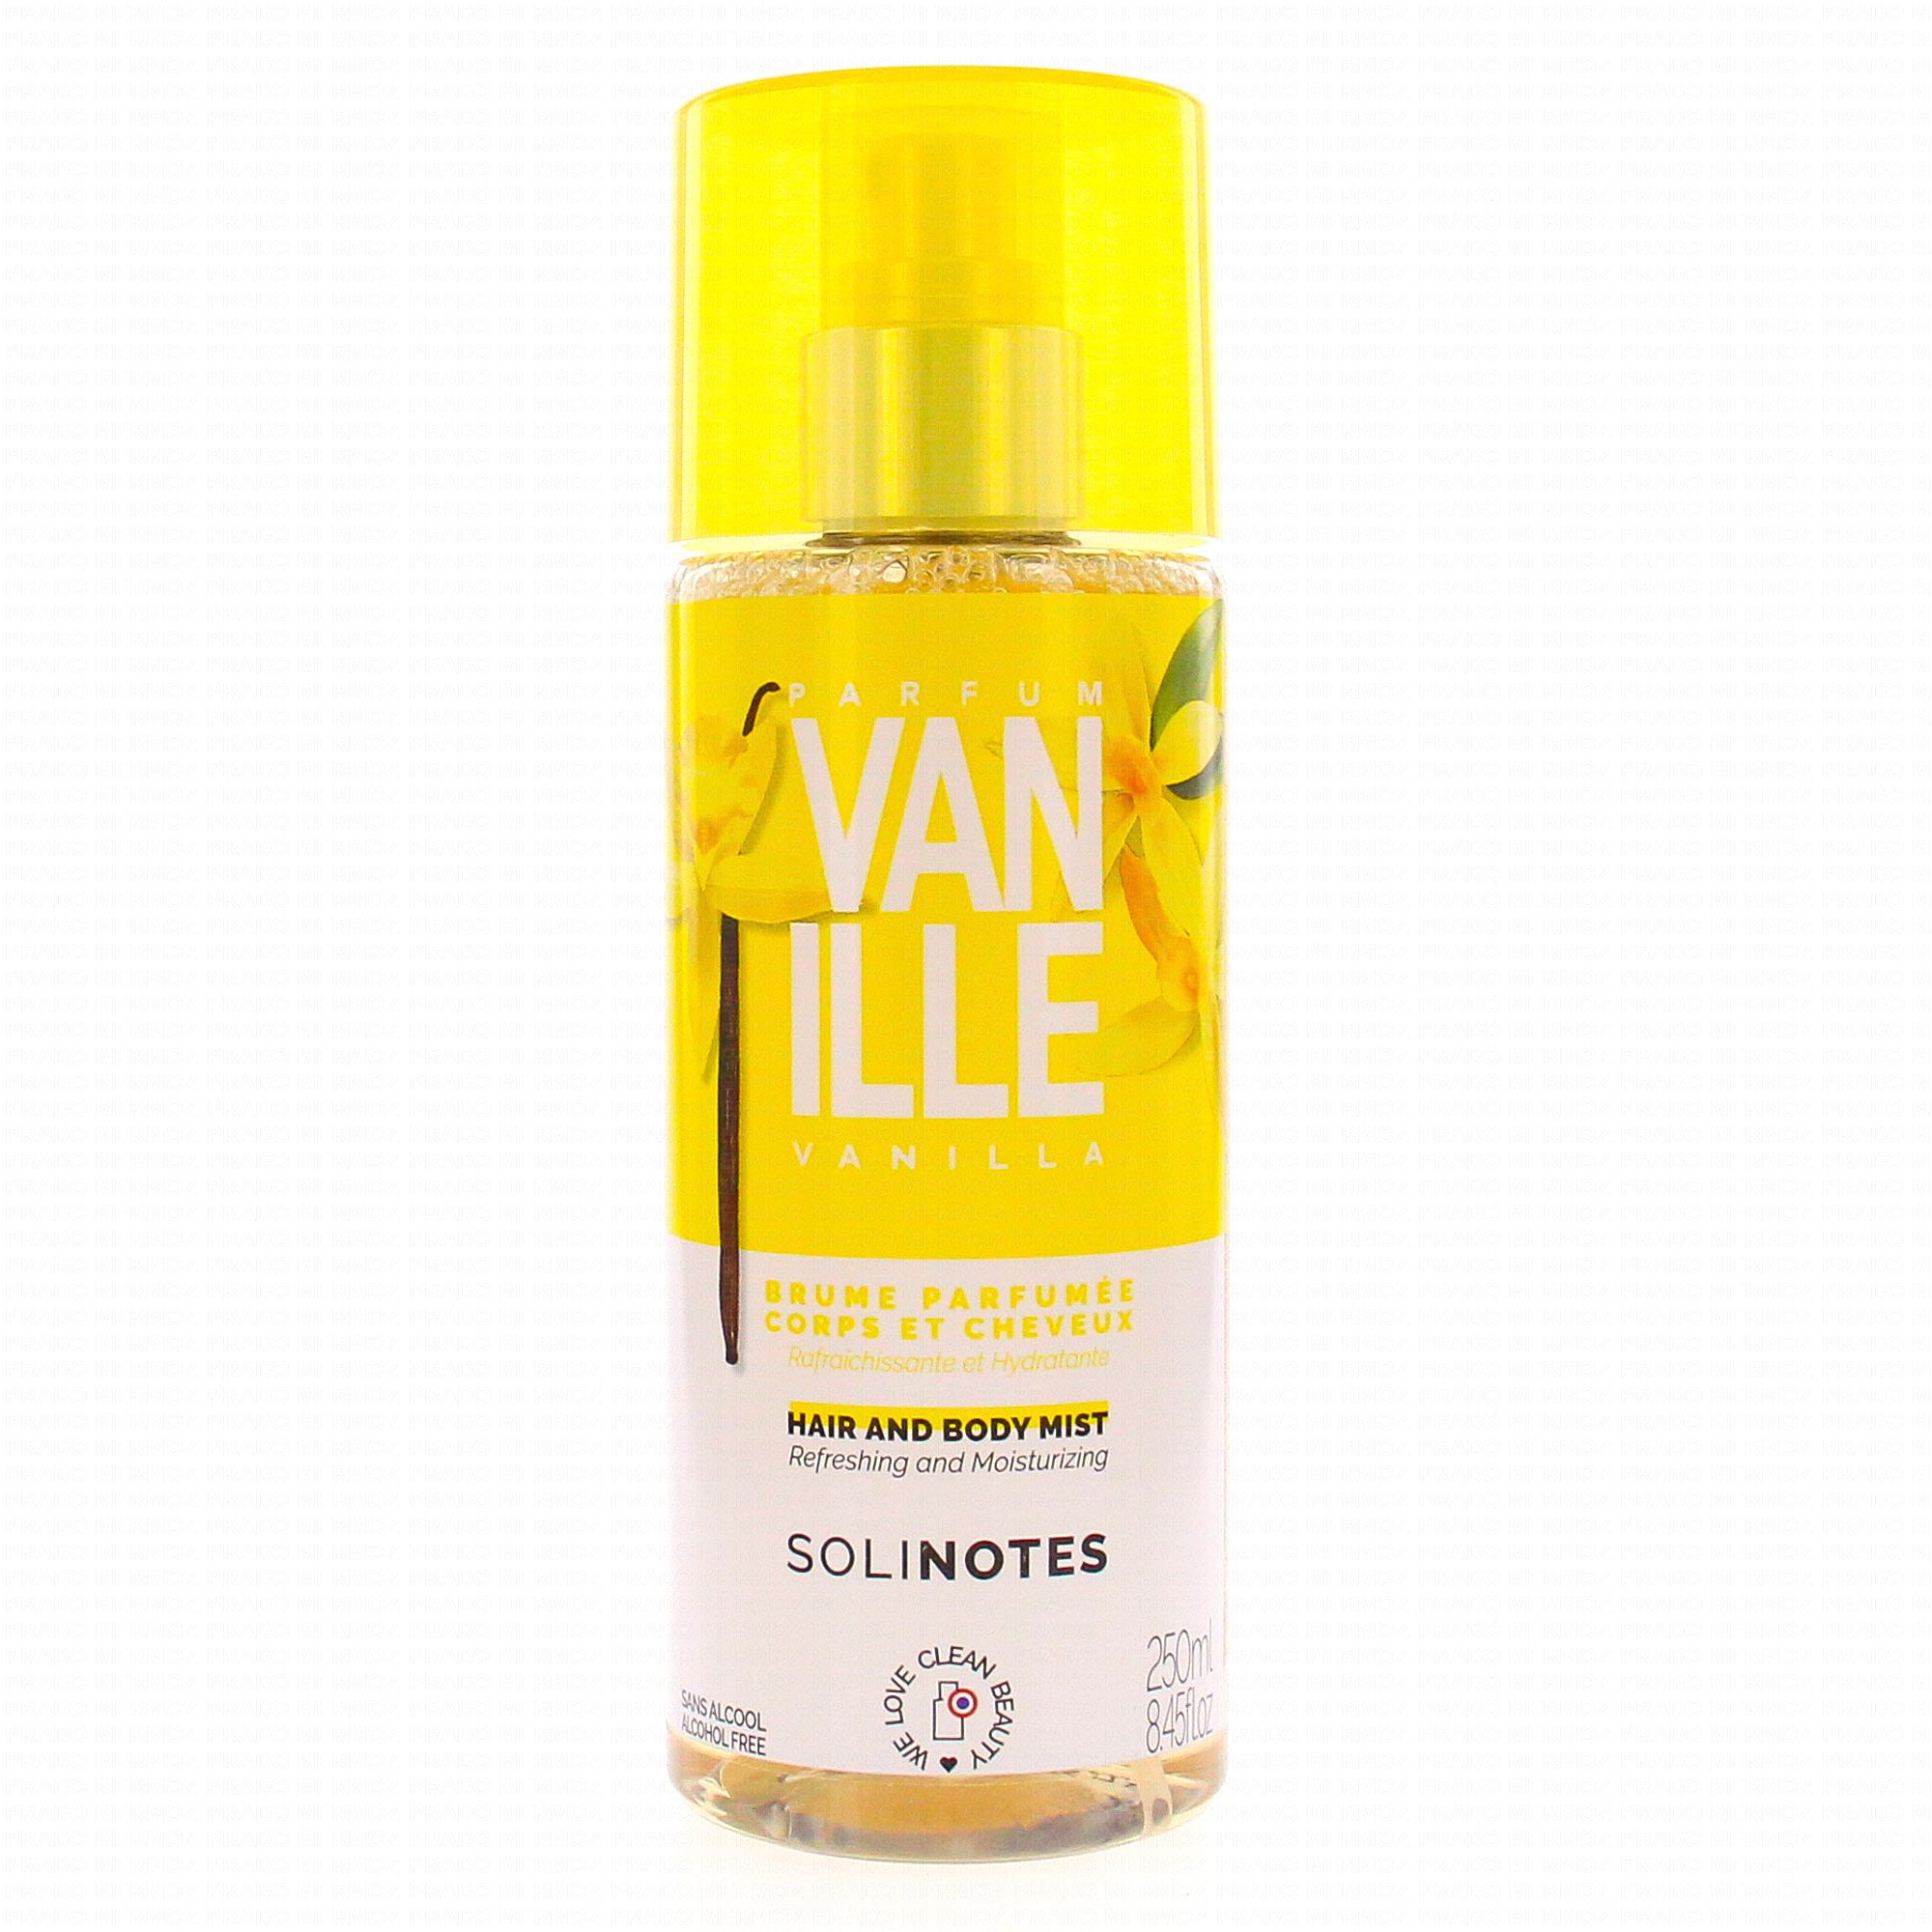 La somptueuse vanille, un parfum solaire aux accords exotiques